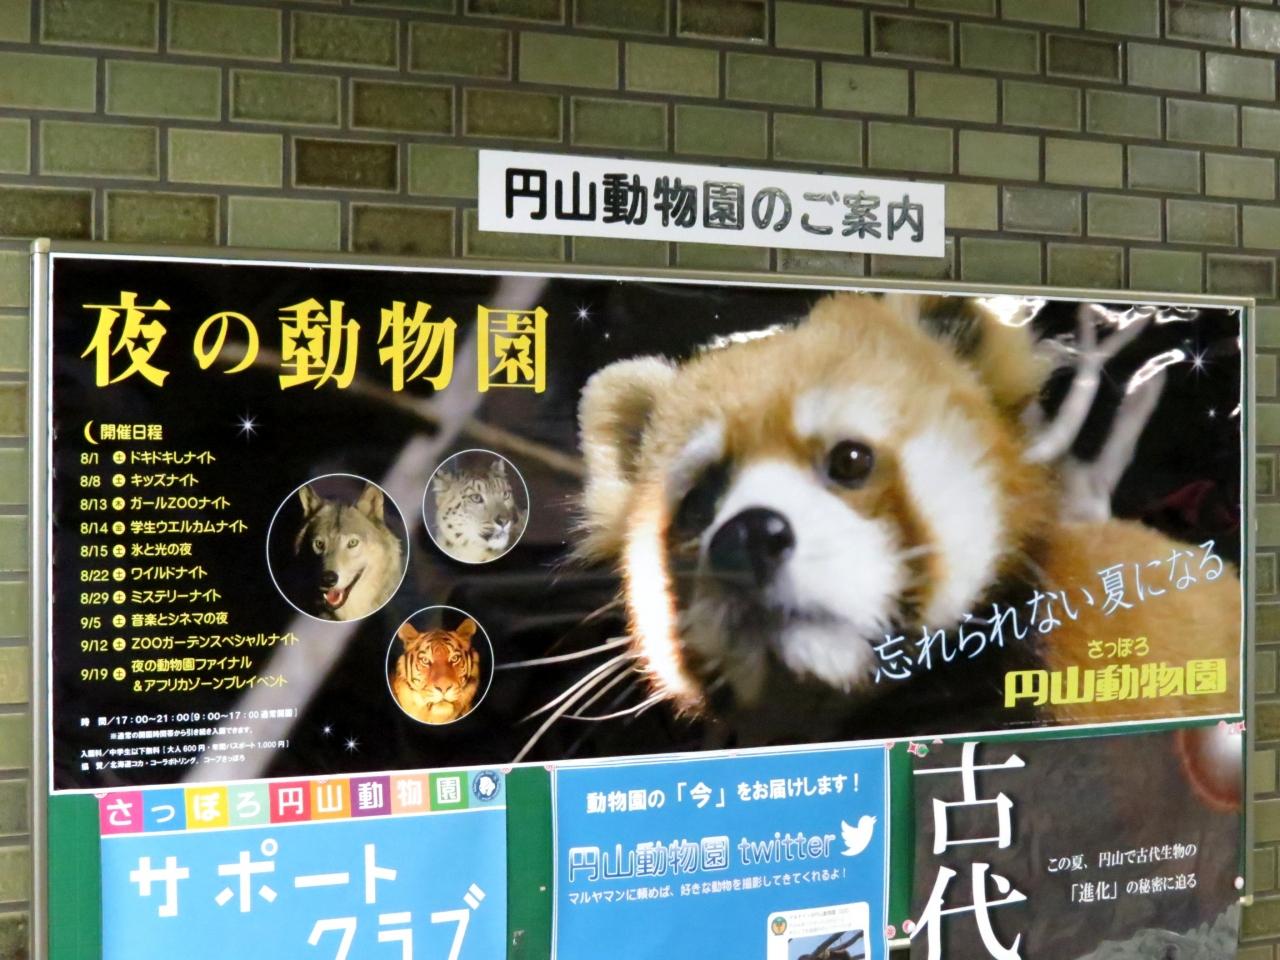 札幌の旅行の夏の人気スポット30選　8位:円山動物園